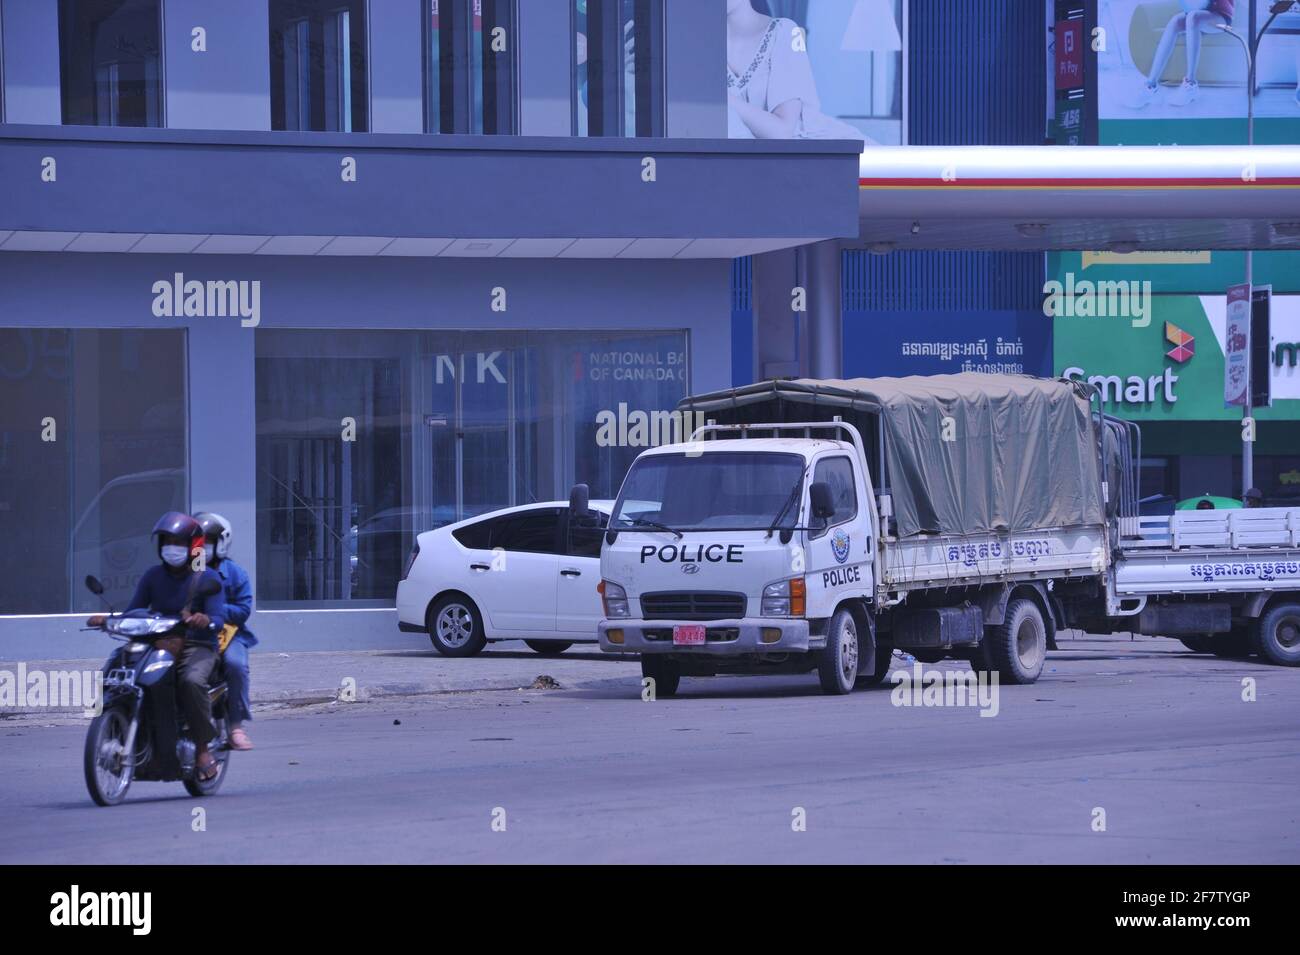 Aufgrund eines kürzlichen Ausbruchs von COVID - 19 in einer Bekleidungsfabrik hat die kambodschanische Regierung eine Sperre auferlegt, bei der Motorradfahrer in Schutzmaske an einem Polizeifahrzeug vorbeifahren, das während der Coronavirus-Pandemie zum Aufstellen eines Kontrollpunkts verwendet wird. Stueng Meanchey, Phnom Penh, Kambodscha. April 2021. © Kraig Lieb Stockfoto